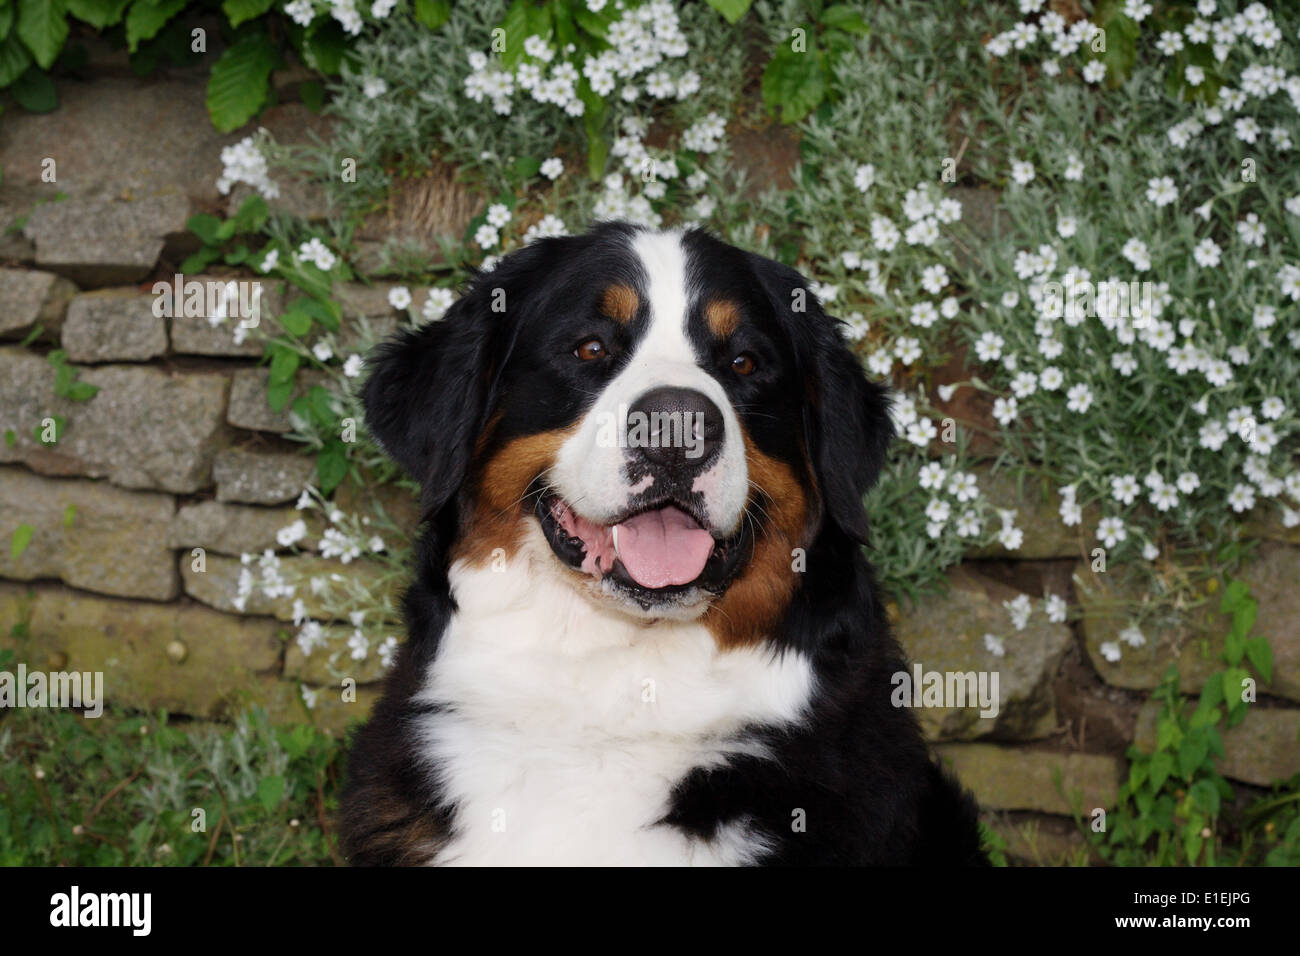 Porträt Berner Sennenhund im Garten vor einer Mauer mit weißen Blumen Foto Stock